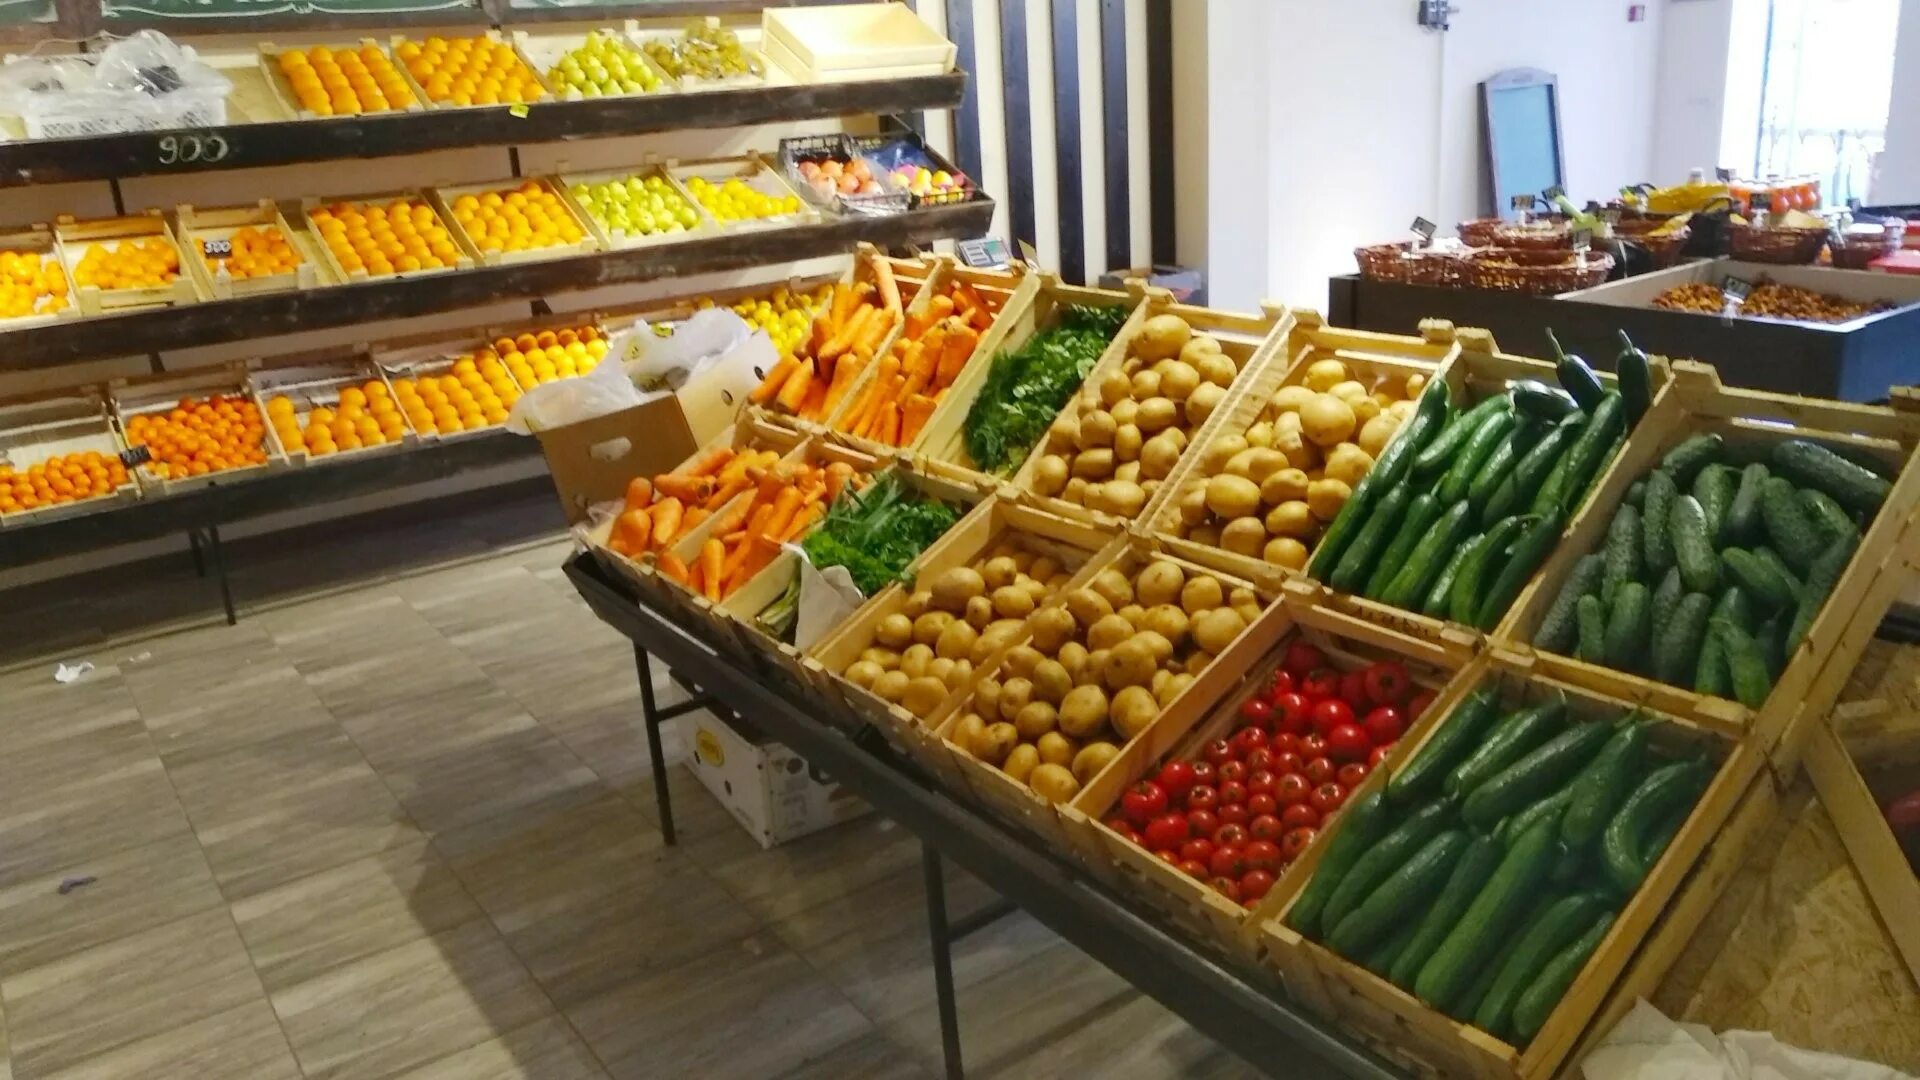 На прилавках магазинов лежат отборные овощи. Овощной прилавок. Овощи на прилавке. Выкладка овощей. Прилавок с овощами и фруктами.